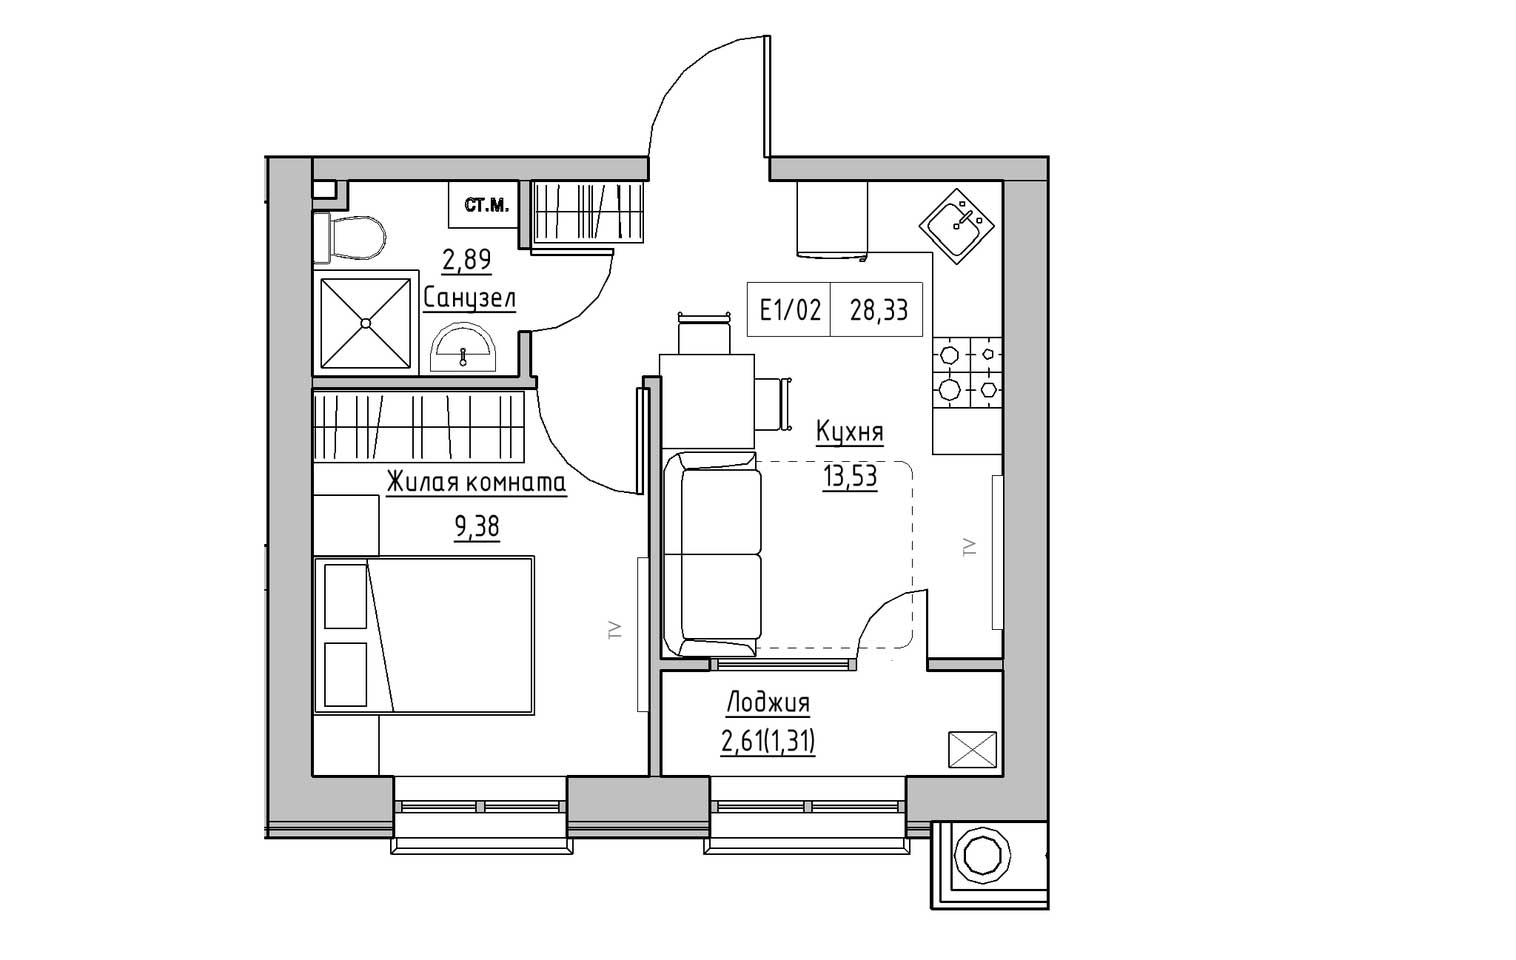 Планування 1-к квартира площею 28.33м2, KS-009-01/0013.